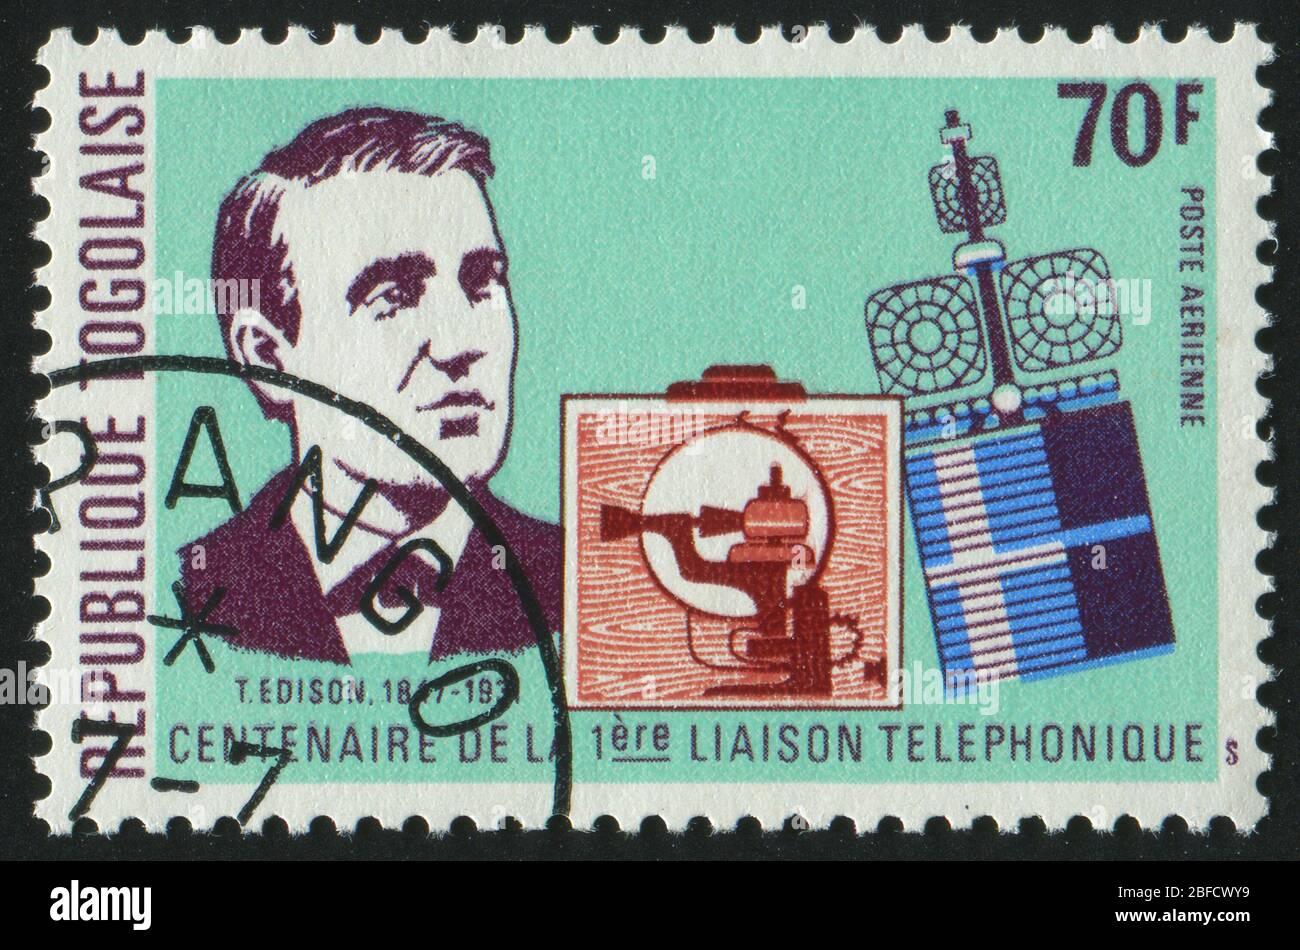 RÉPUBLIQUE TOGOLAISE - VERS 1976: Cachet imprimé par le Togo, montre le portrait Thomas A. Edison, vers 1976. Banque D'Images